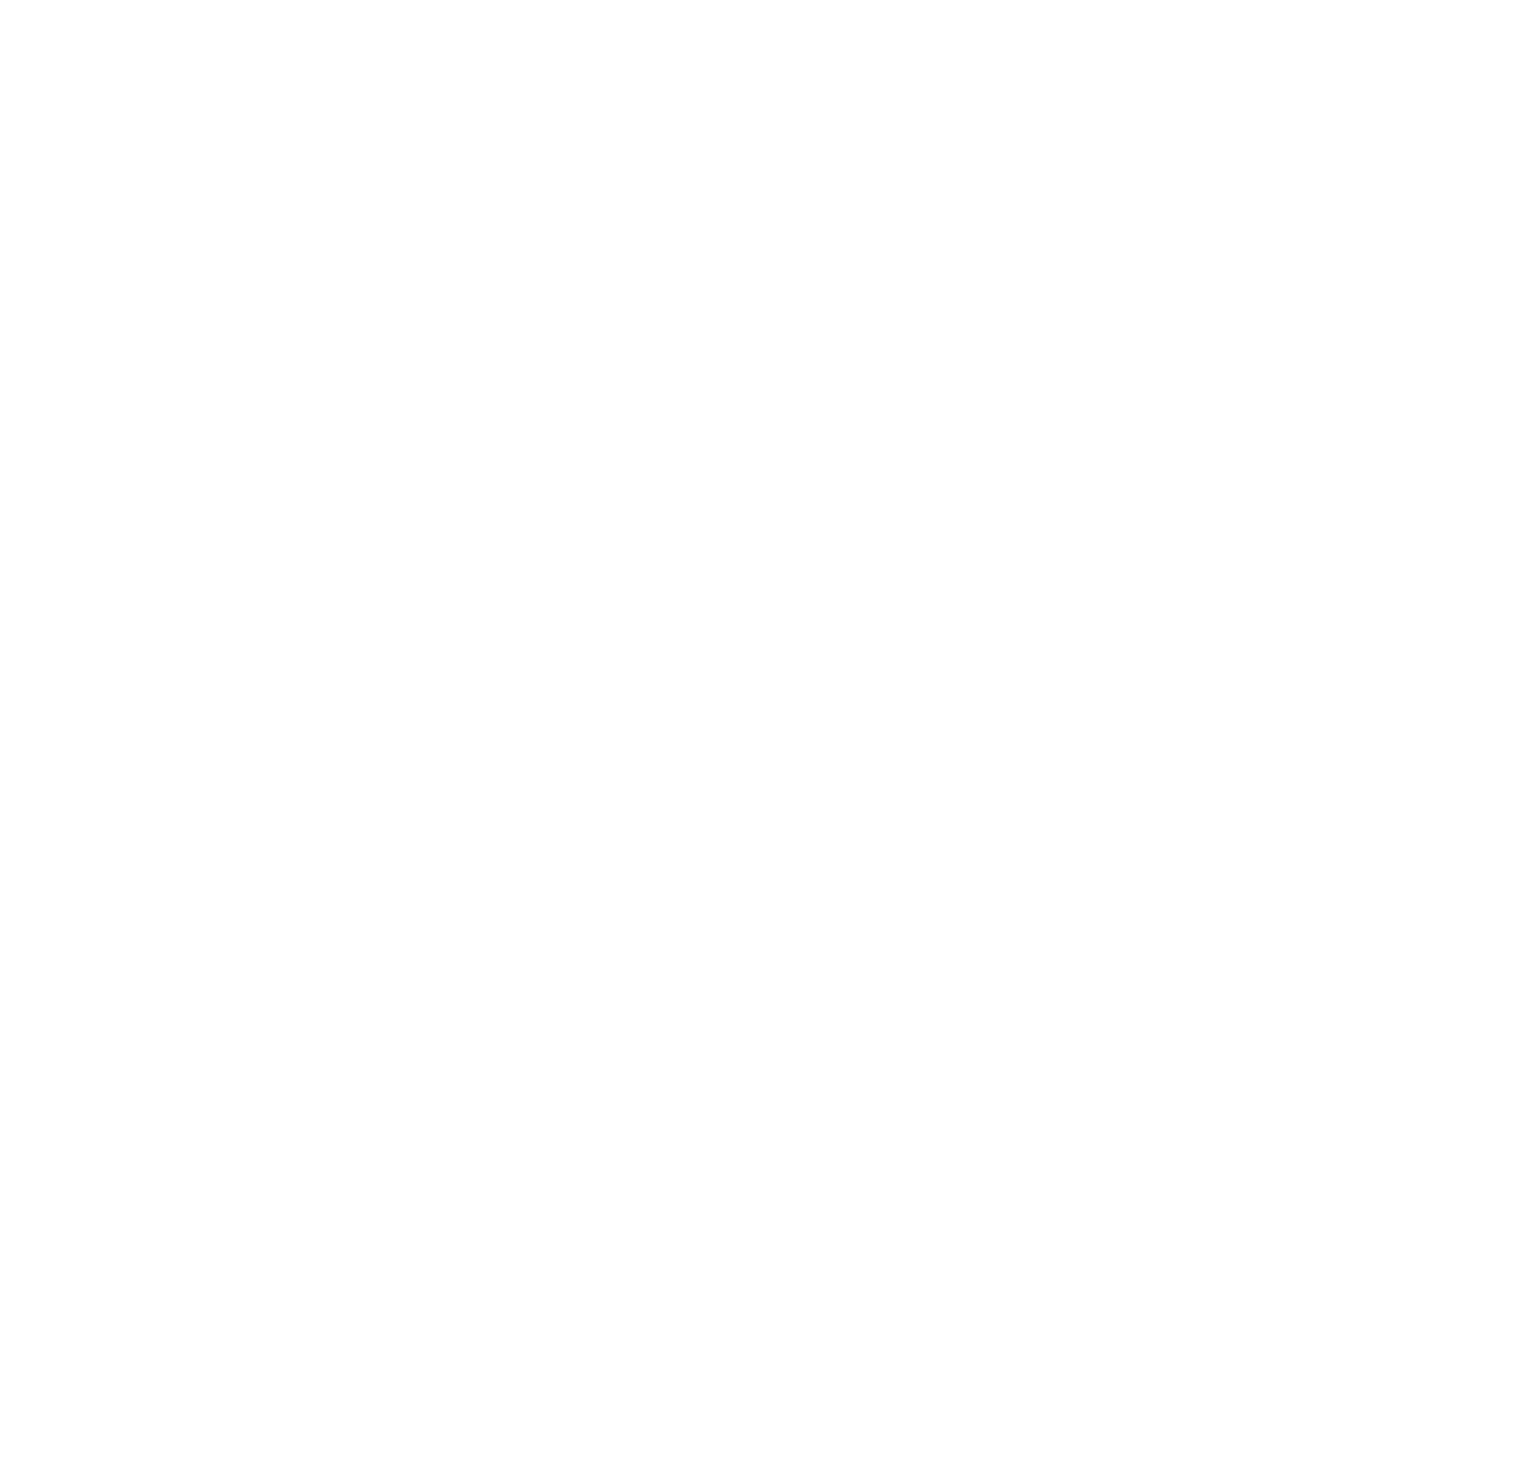 C&S Wholesale Grocers Logo für dunkle Hintergründe (transparentes PNG)